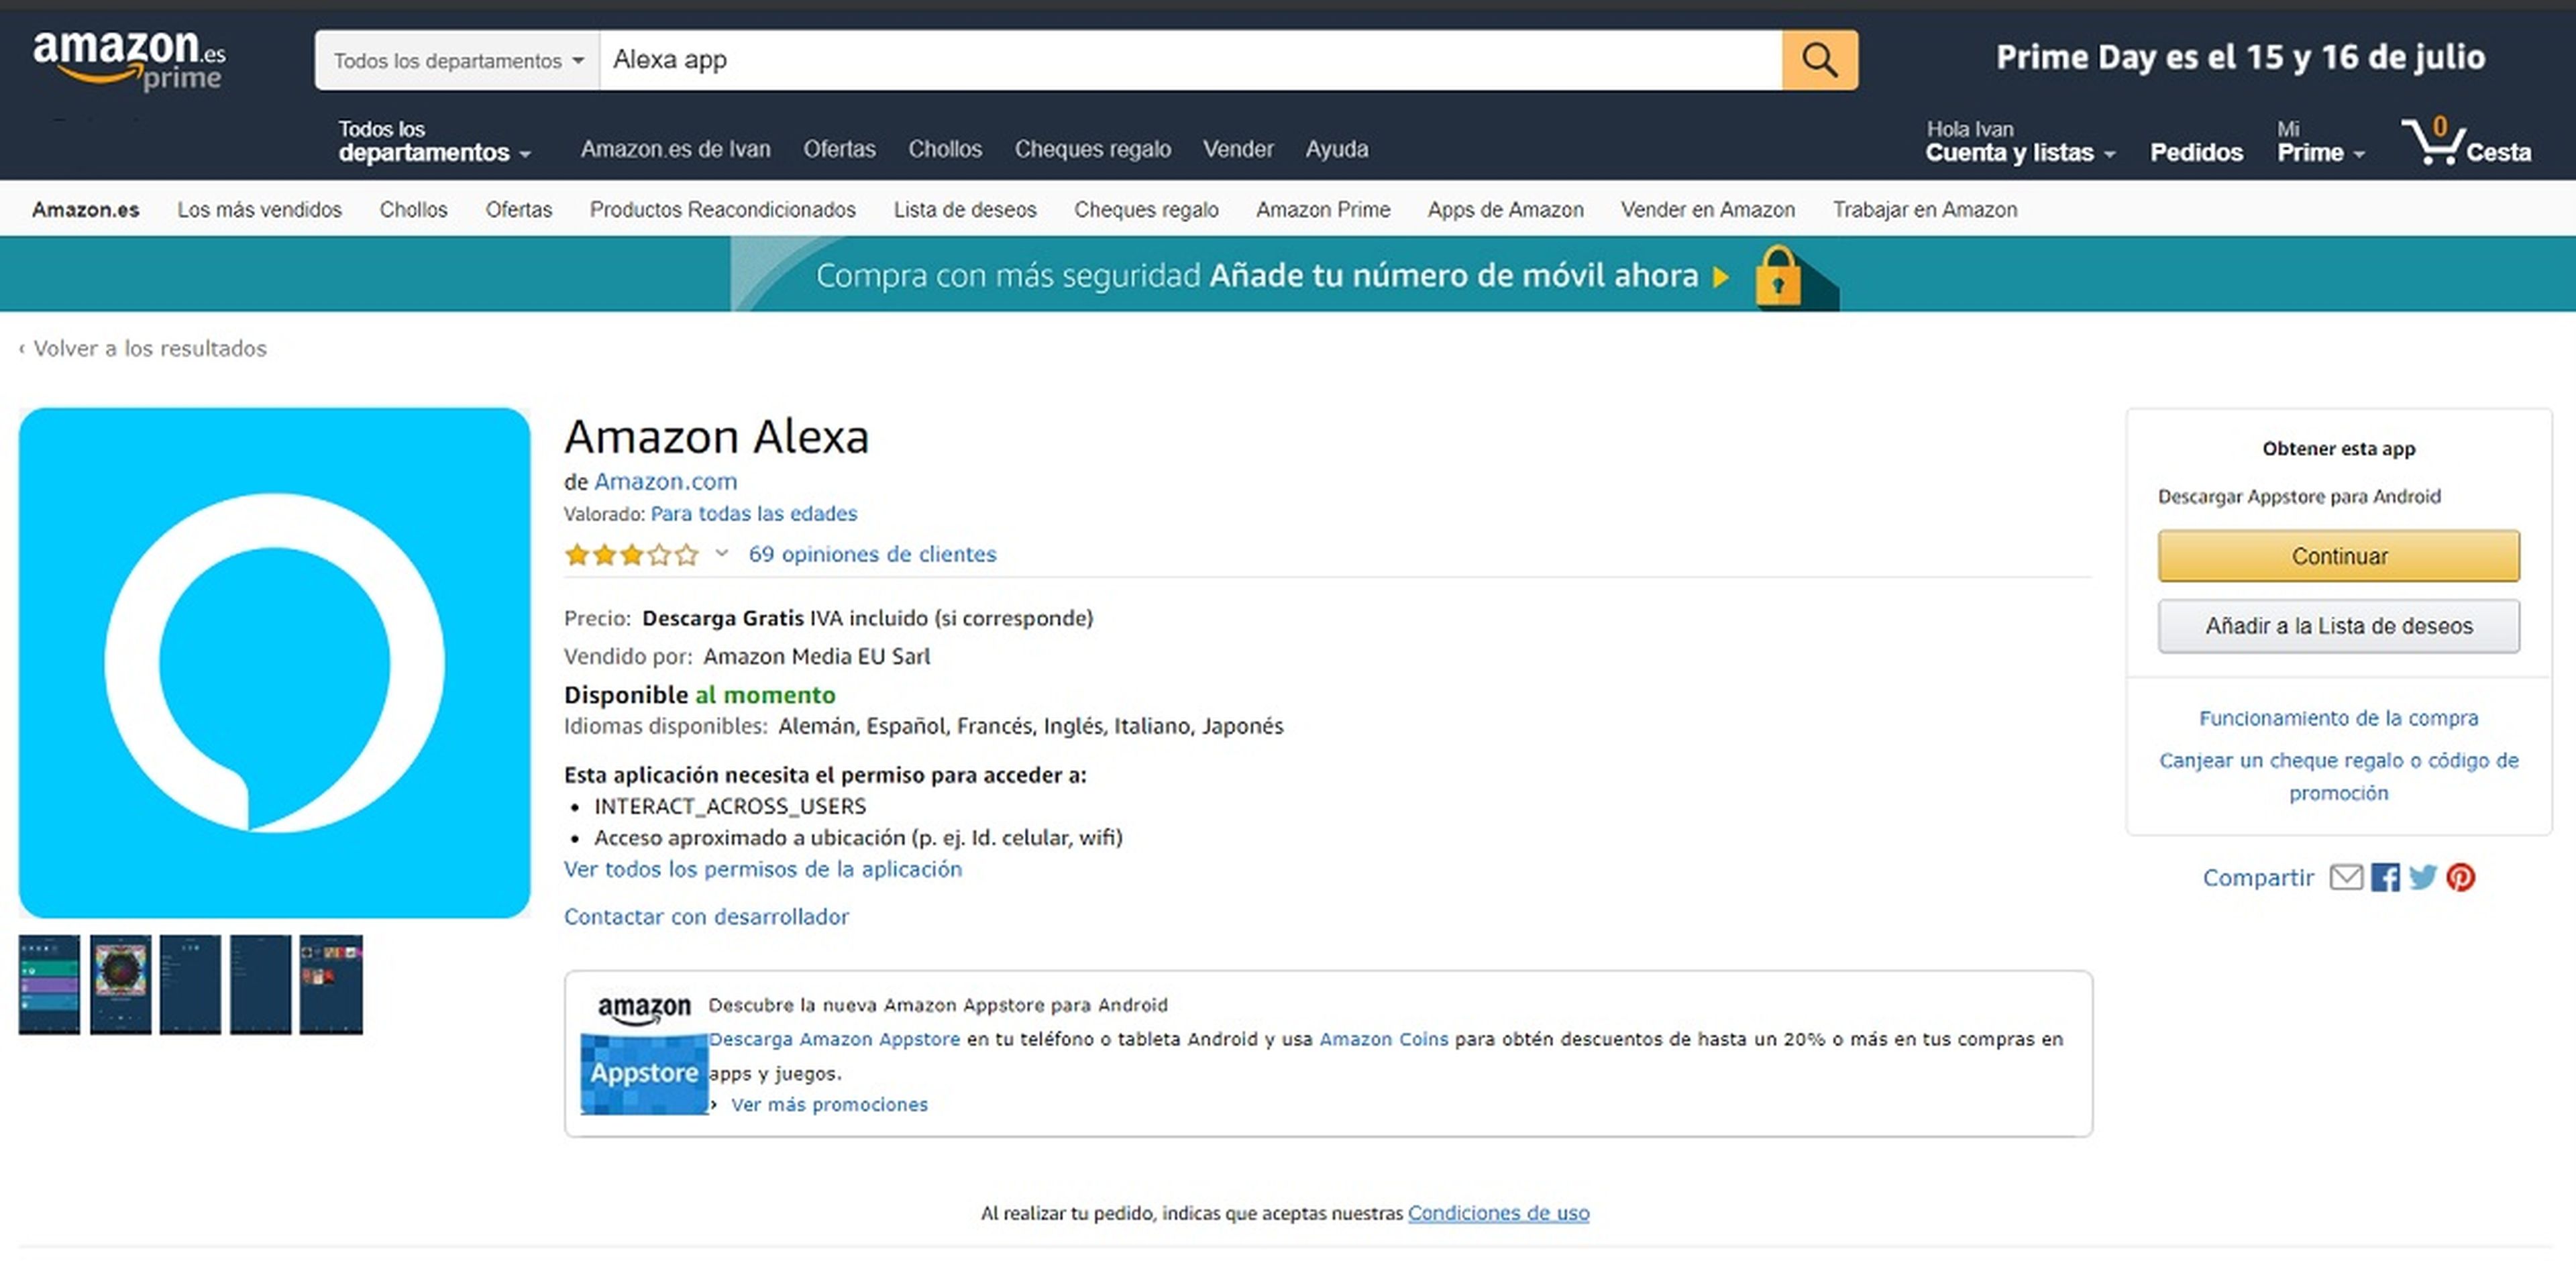 Configuración Amazon Alexa